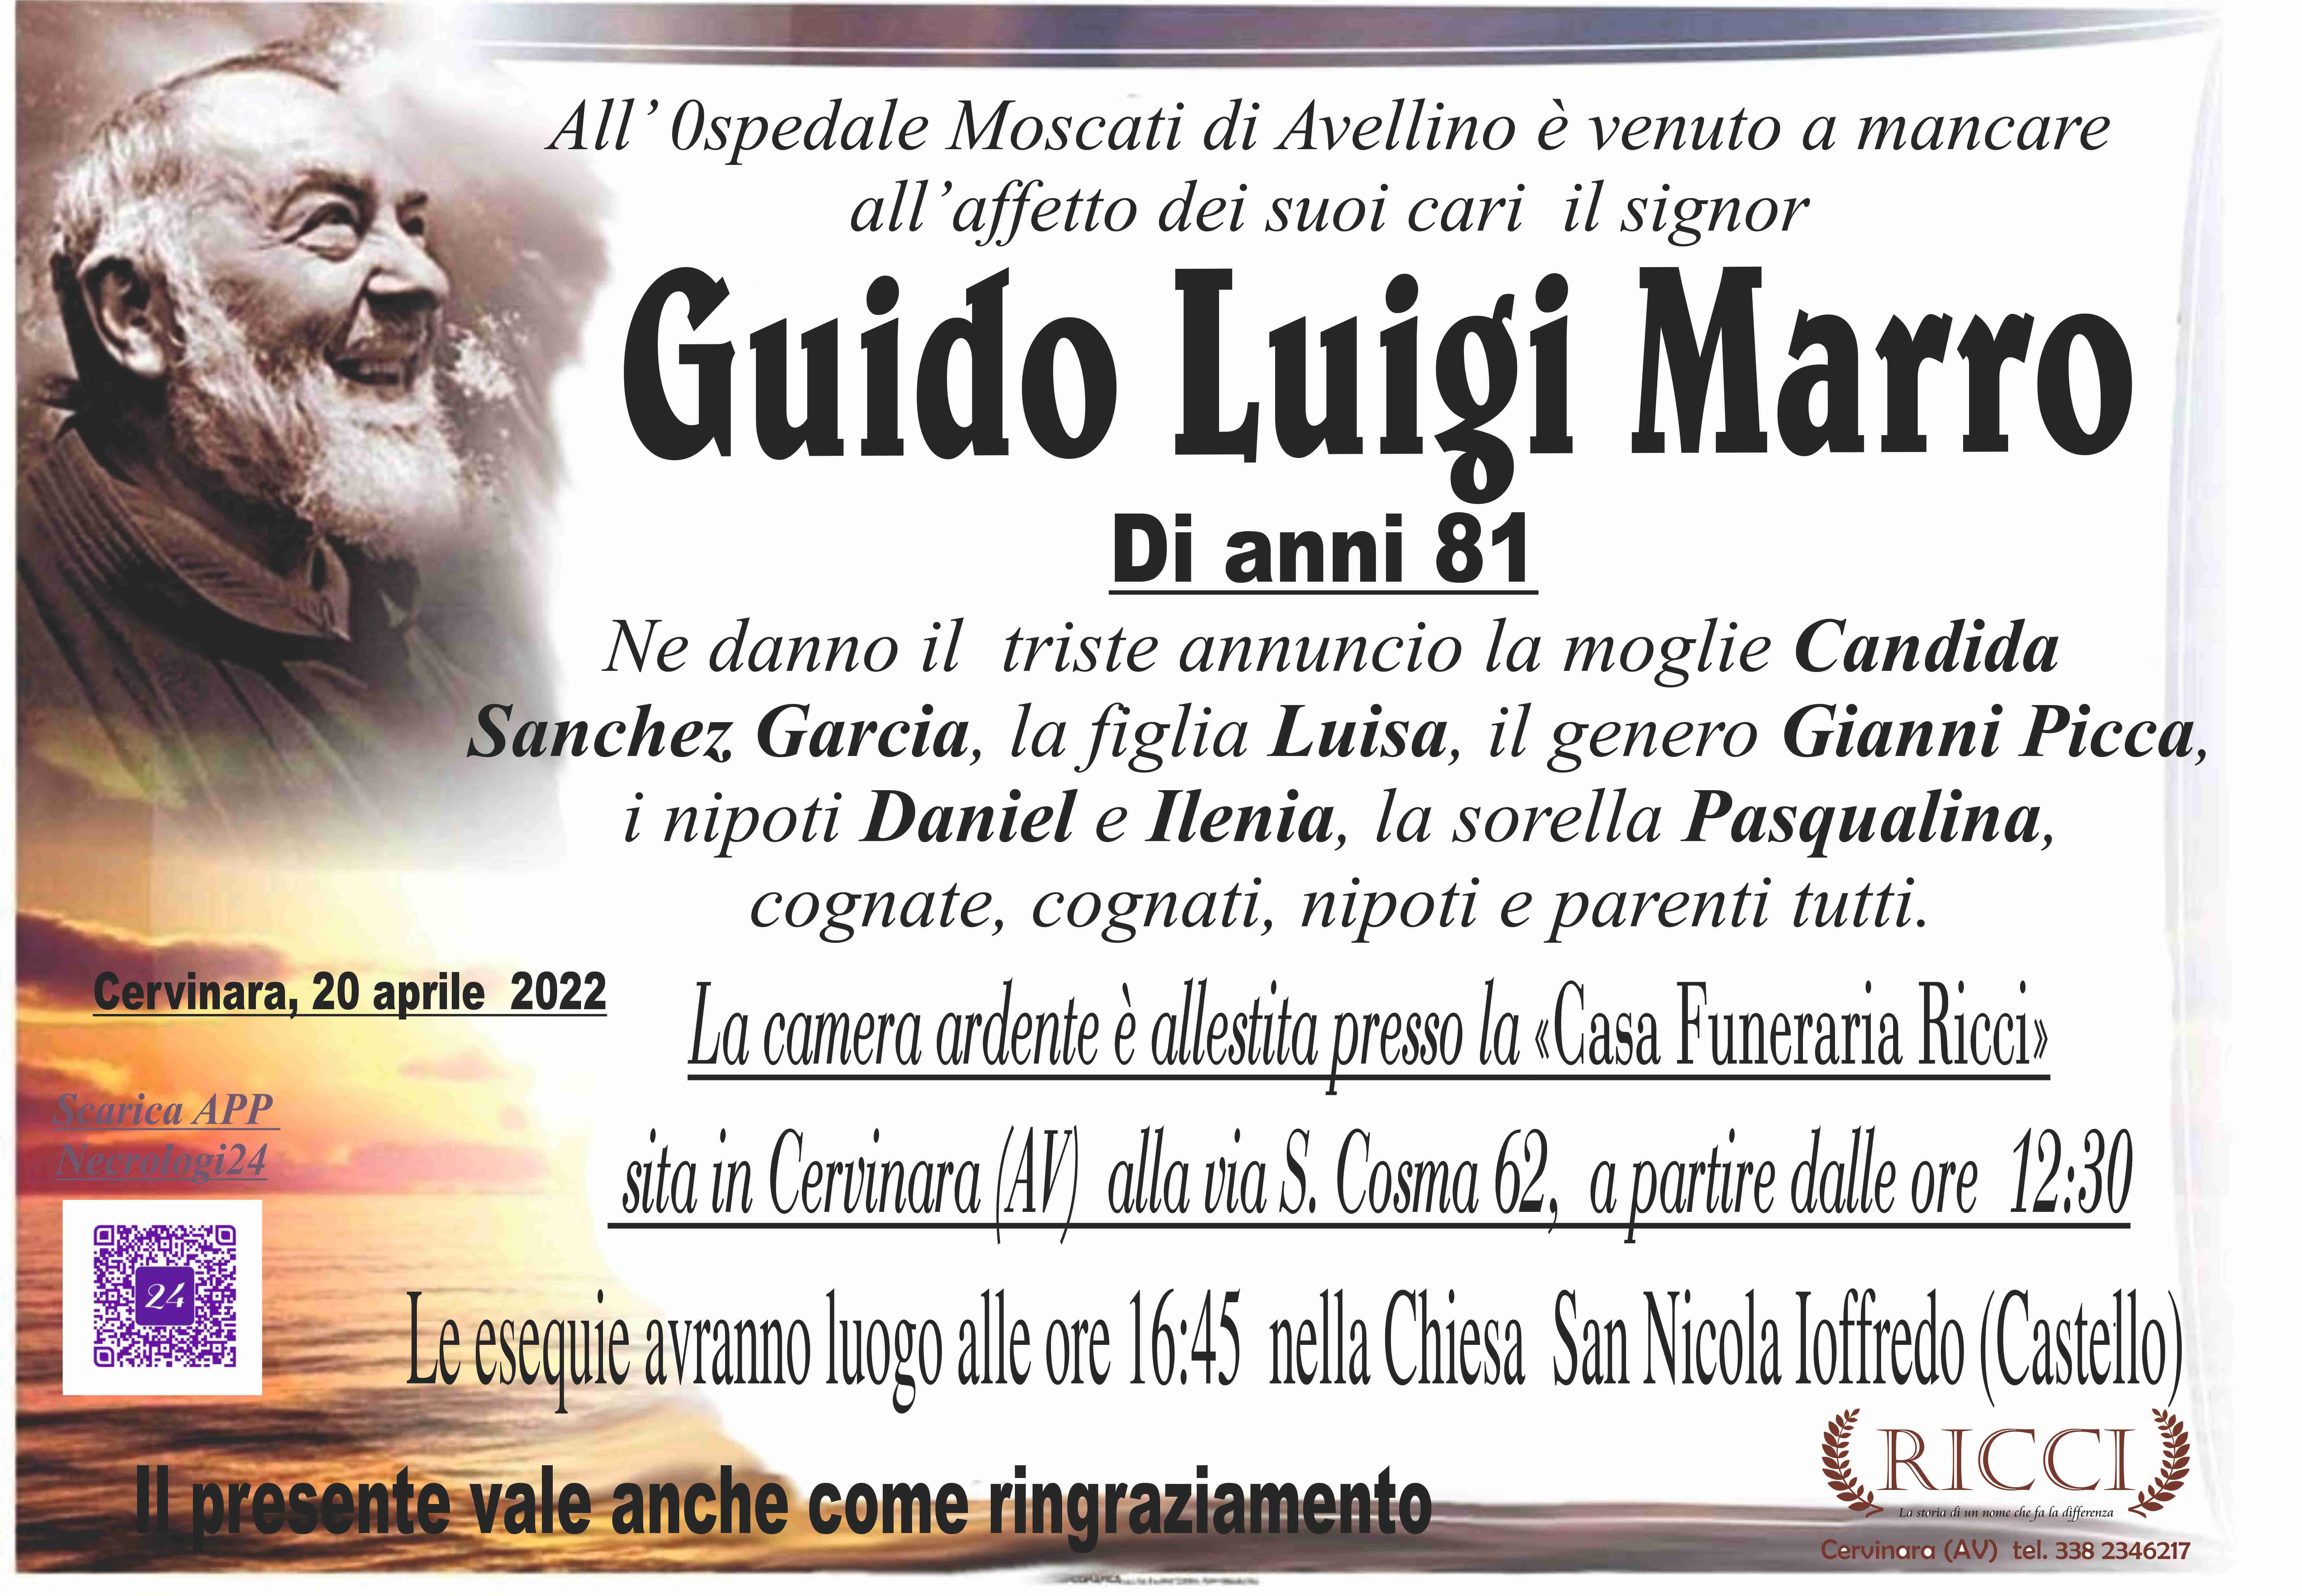 Guido Luigi Marro